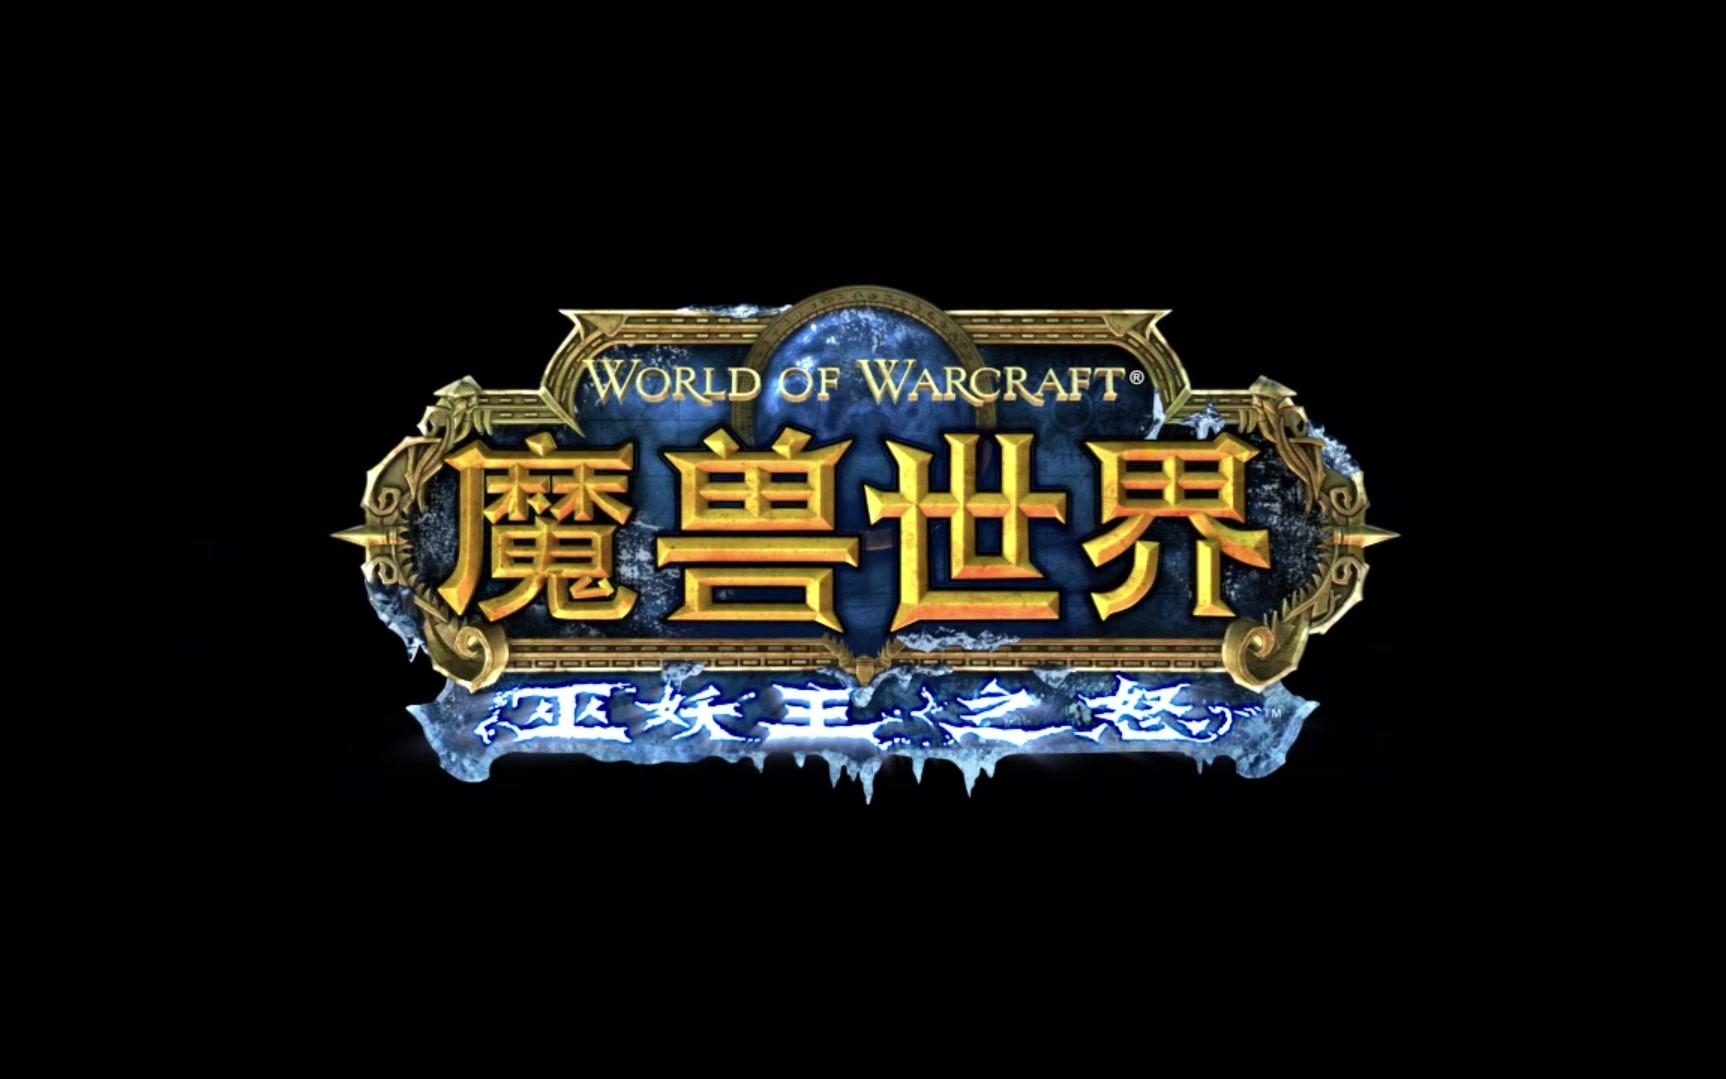 巫妖王之怒logo图片